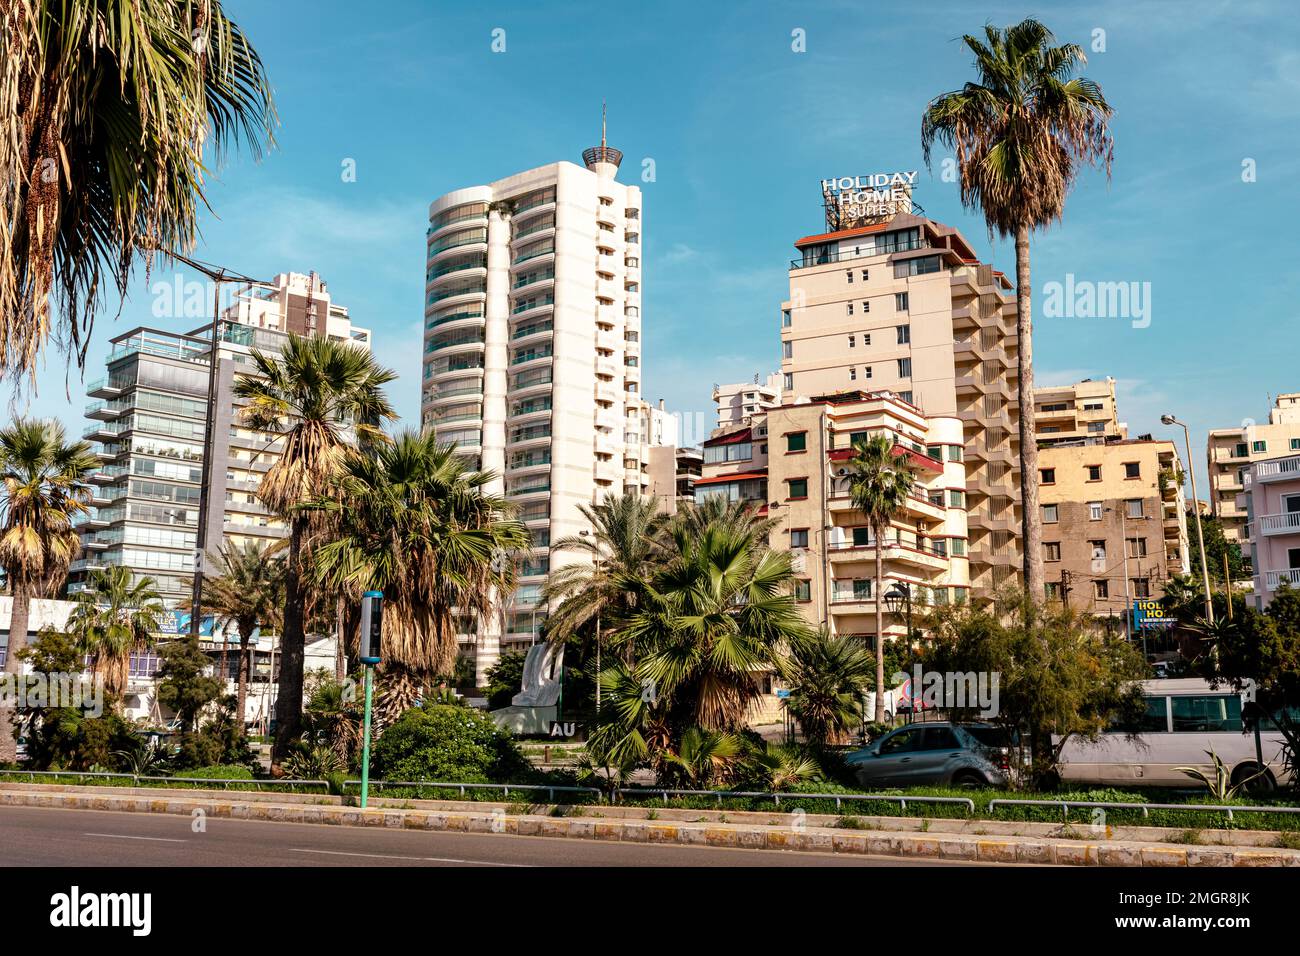 Boulevard Corniche dans le Raouche. Quartier résidentiel et commercial de Beyrouth. Liban. Destination touristique populaire à Beyrouth. Banque D'Images